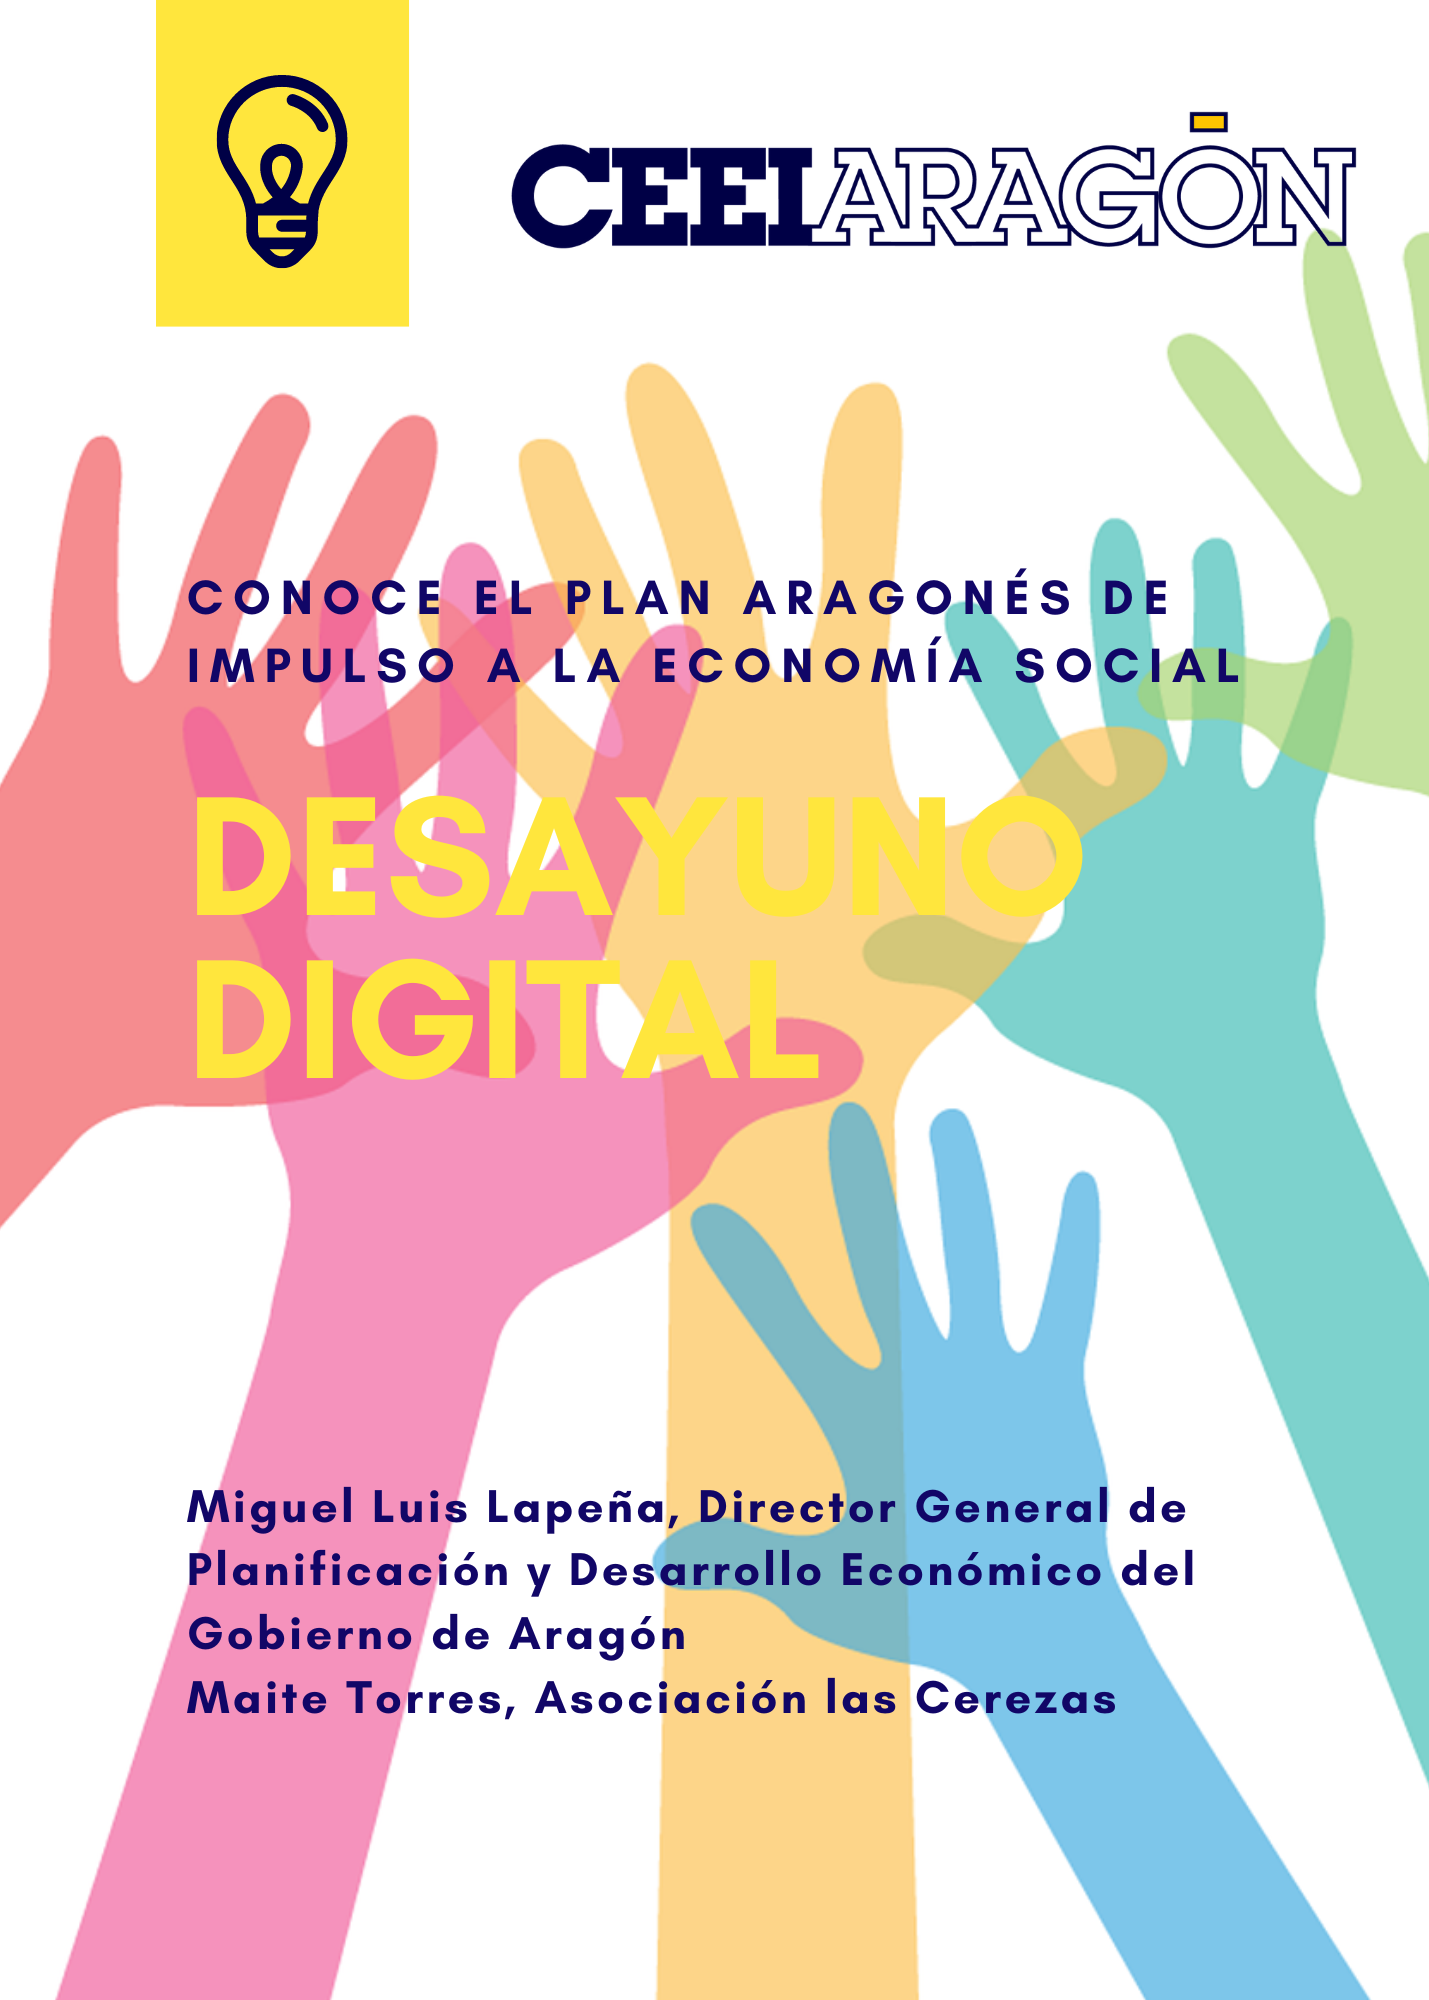 Más de 70 personas muestran su interés por el Plan Aragonés a la Economía Social del Gobierno de Aragón